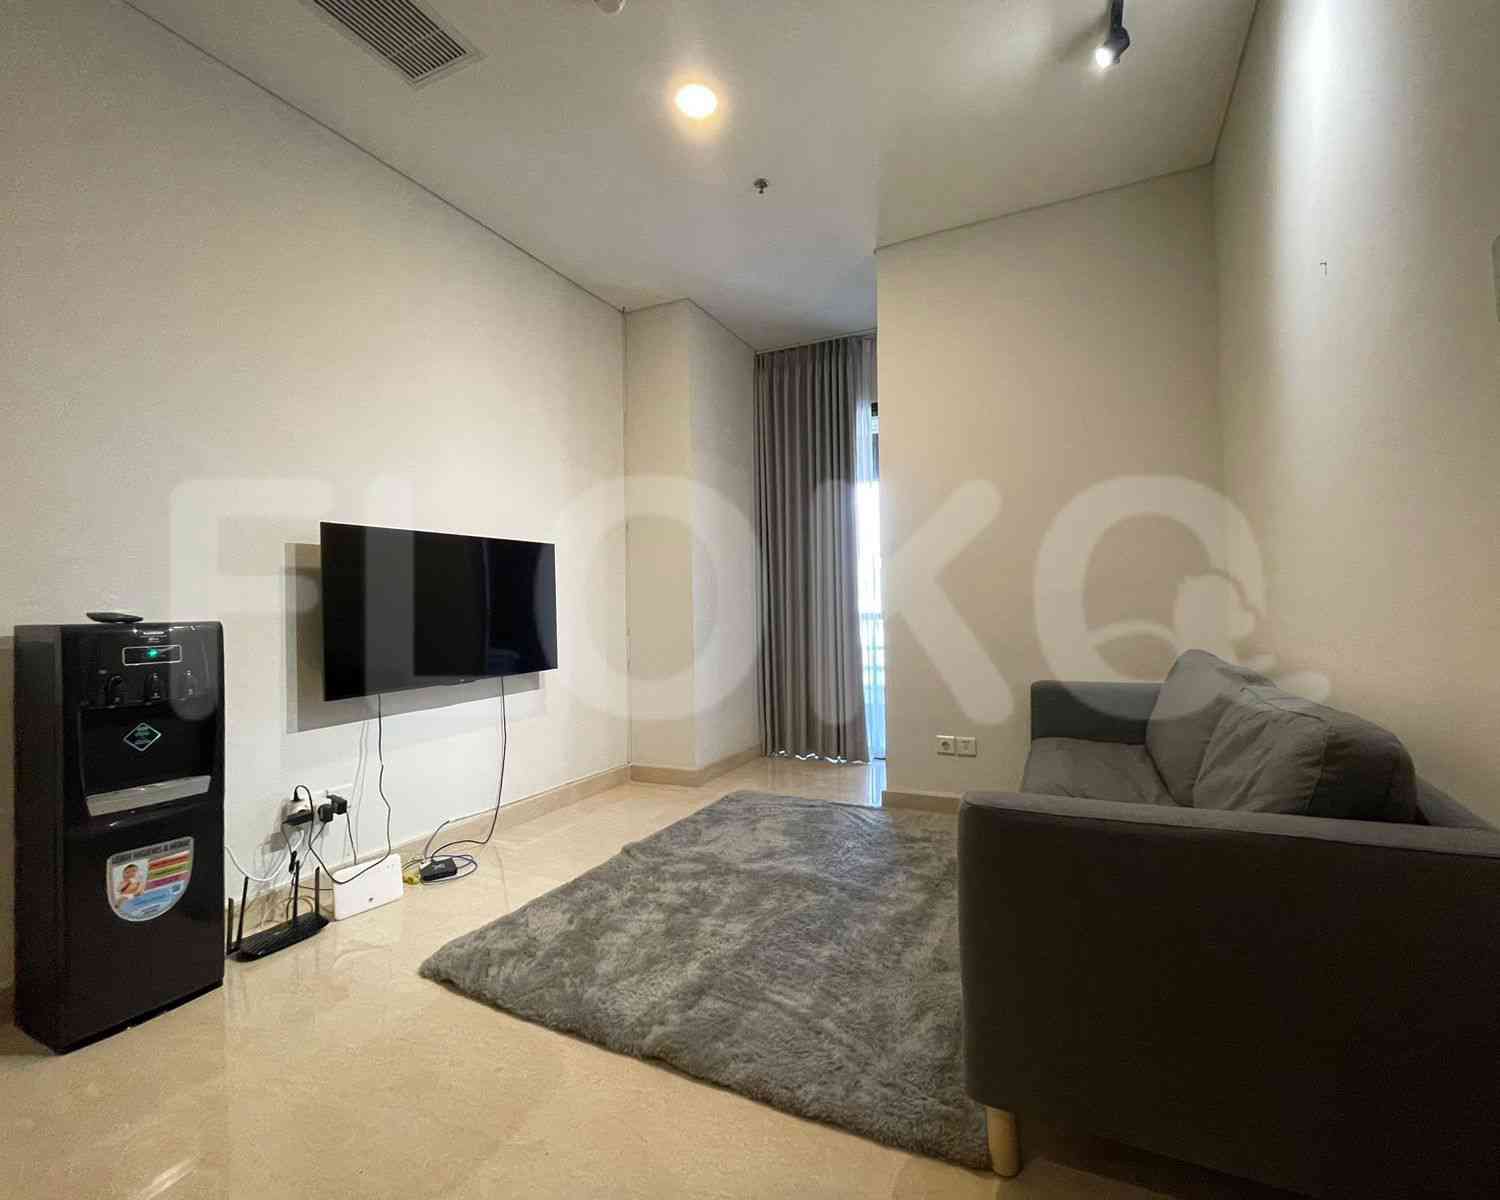 2 Bedroom on 8th Floor for Rent in Sudirman Suites Jakarta - fsua00 1